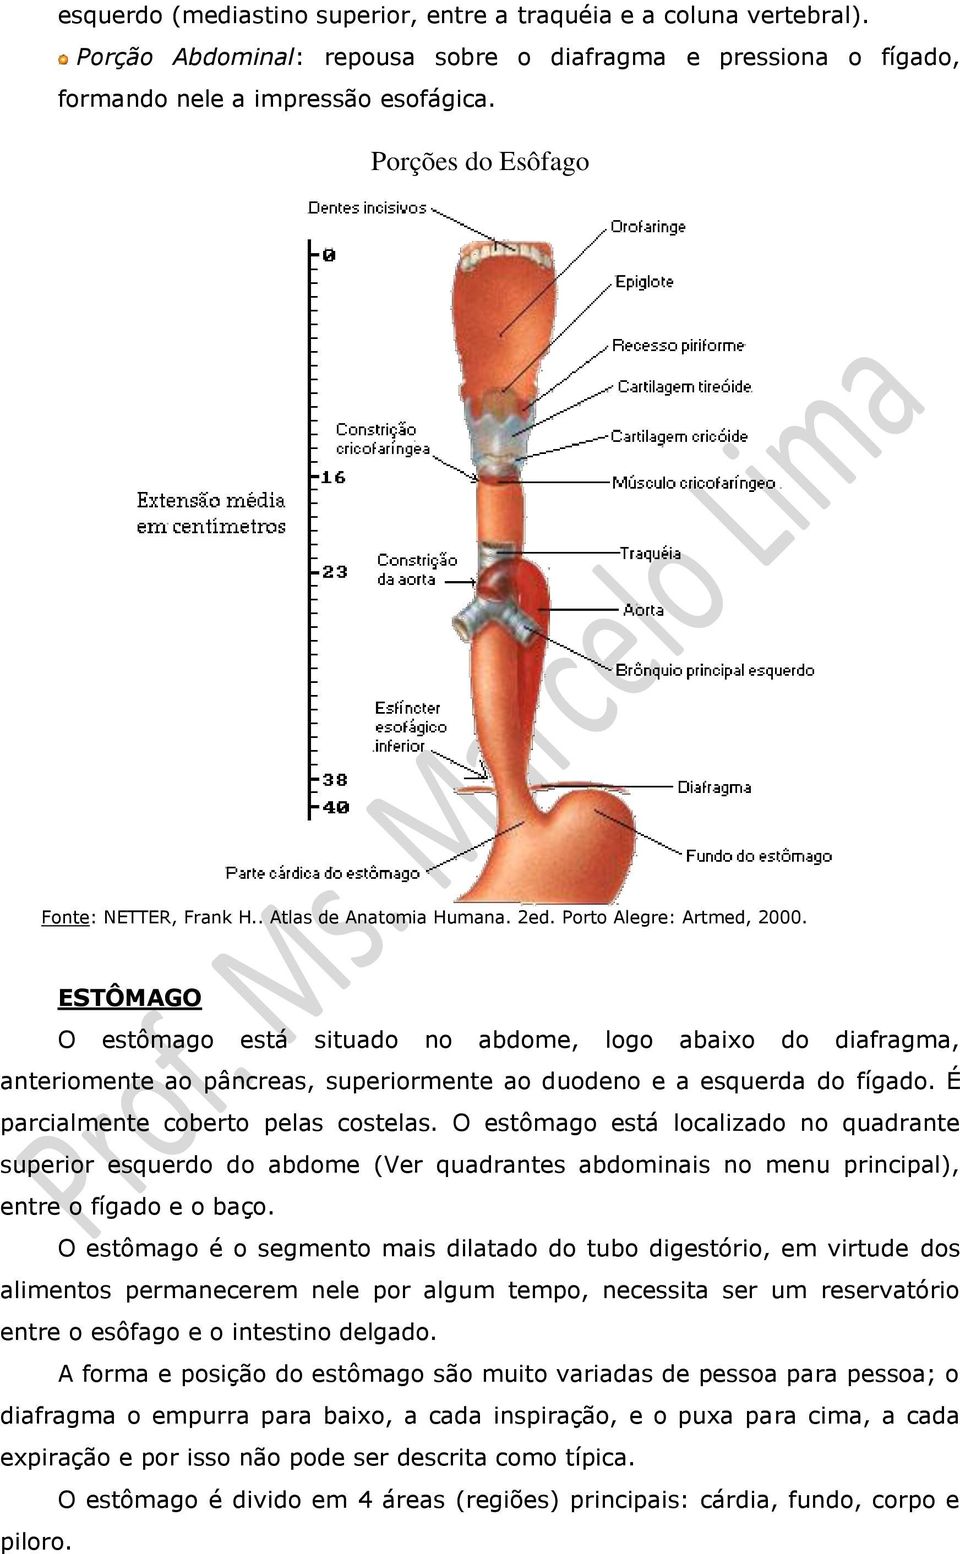 É parcialmente coberto pelas costelas. O estômago está localizado no quadrante superior esquerdo do abdome (Ver quadrantes abdominais no menu principal), entre o fígado e o baço.